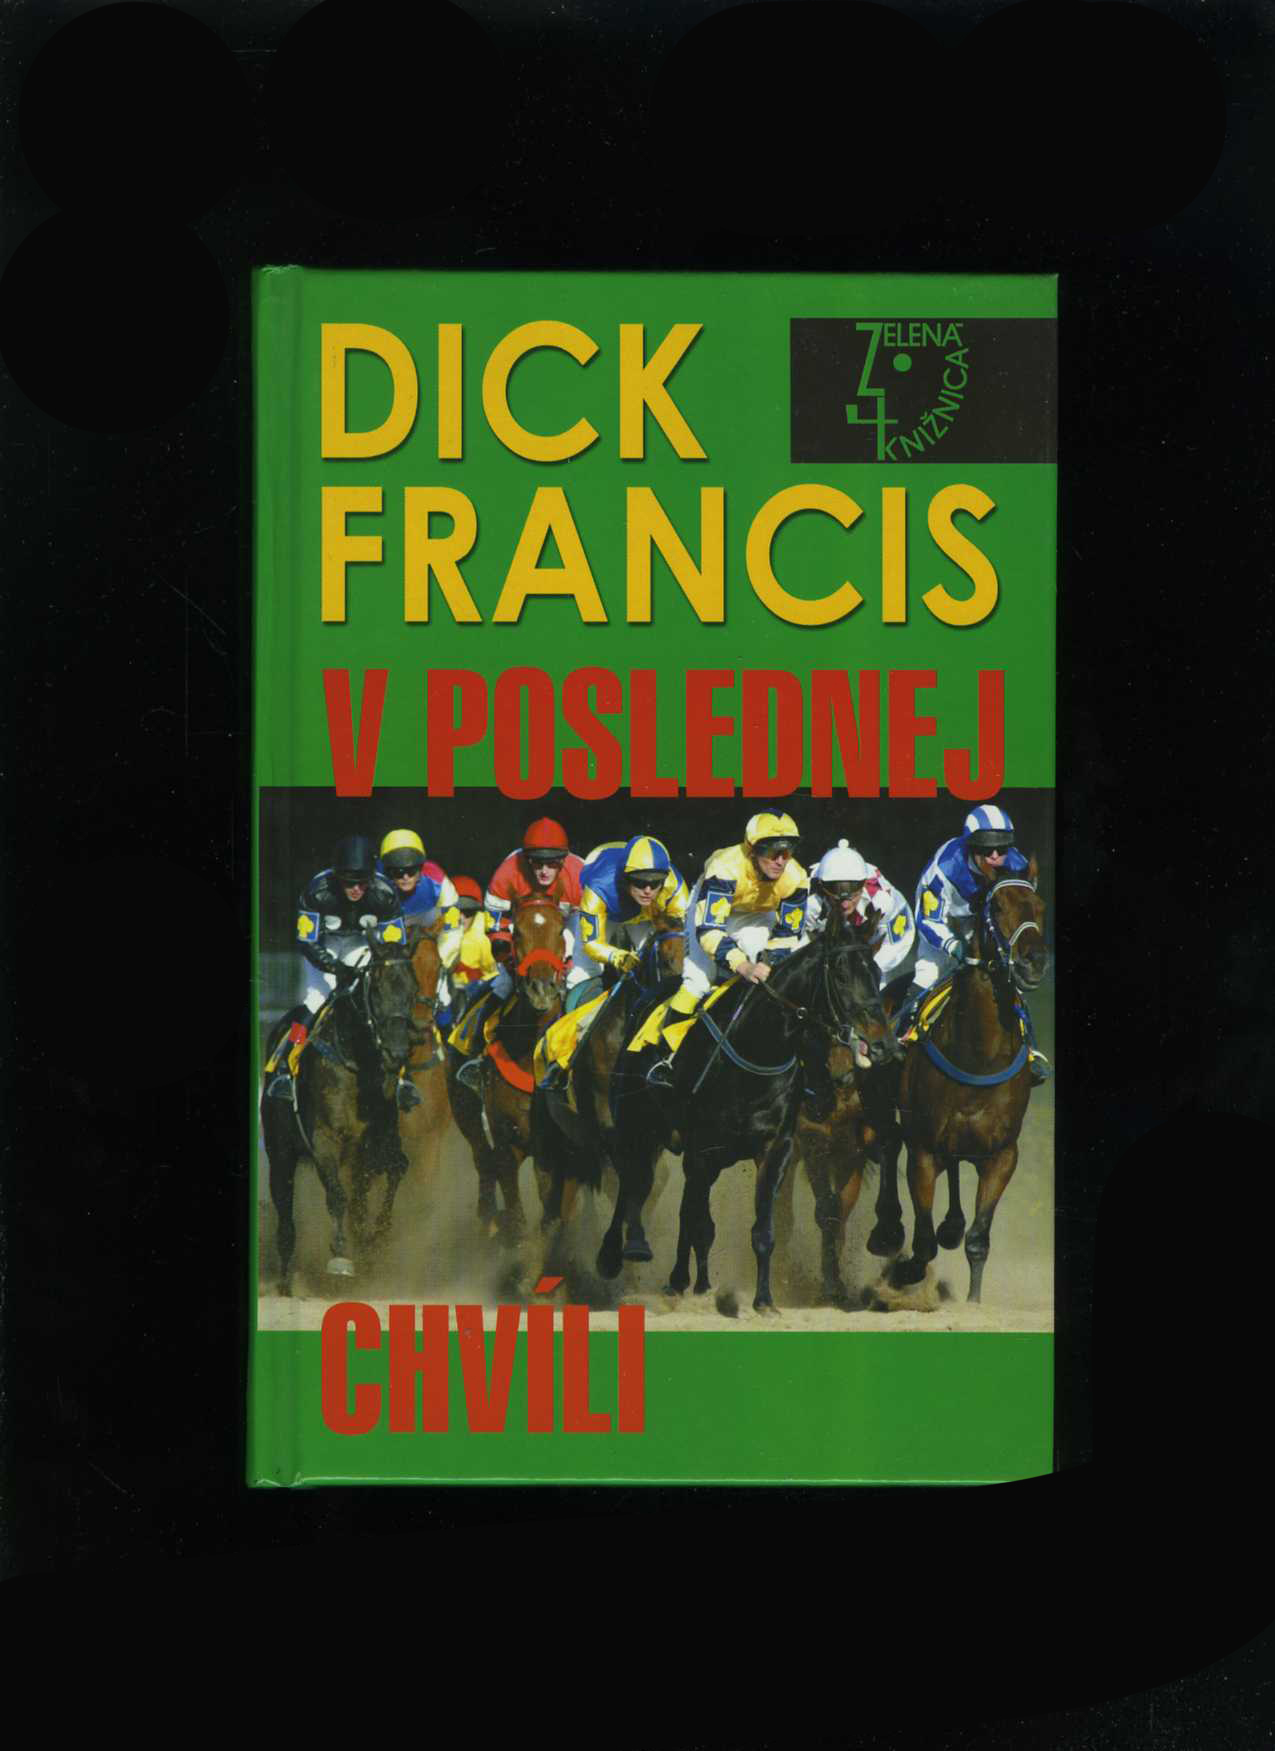 V poslednej chvíli (Dick Francis)